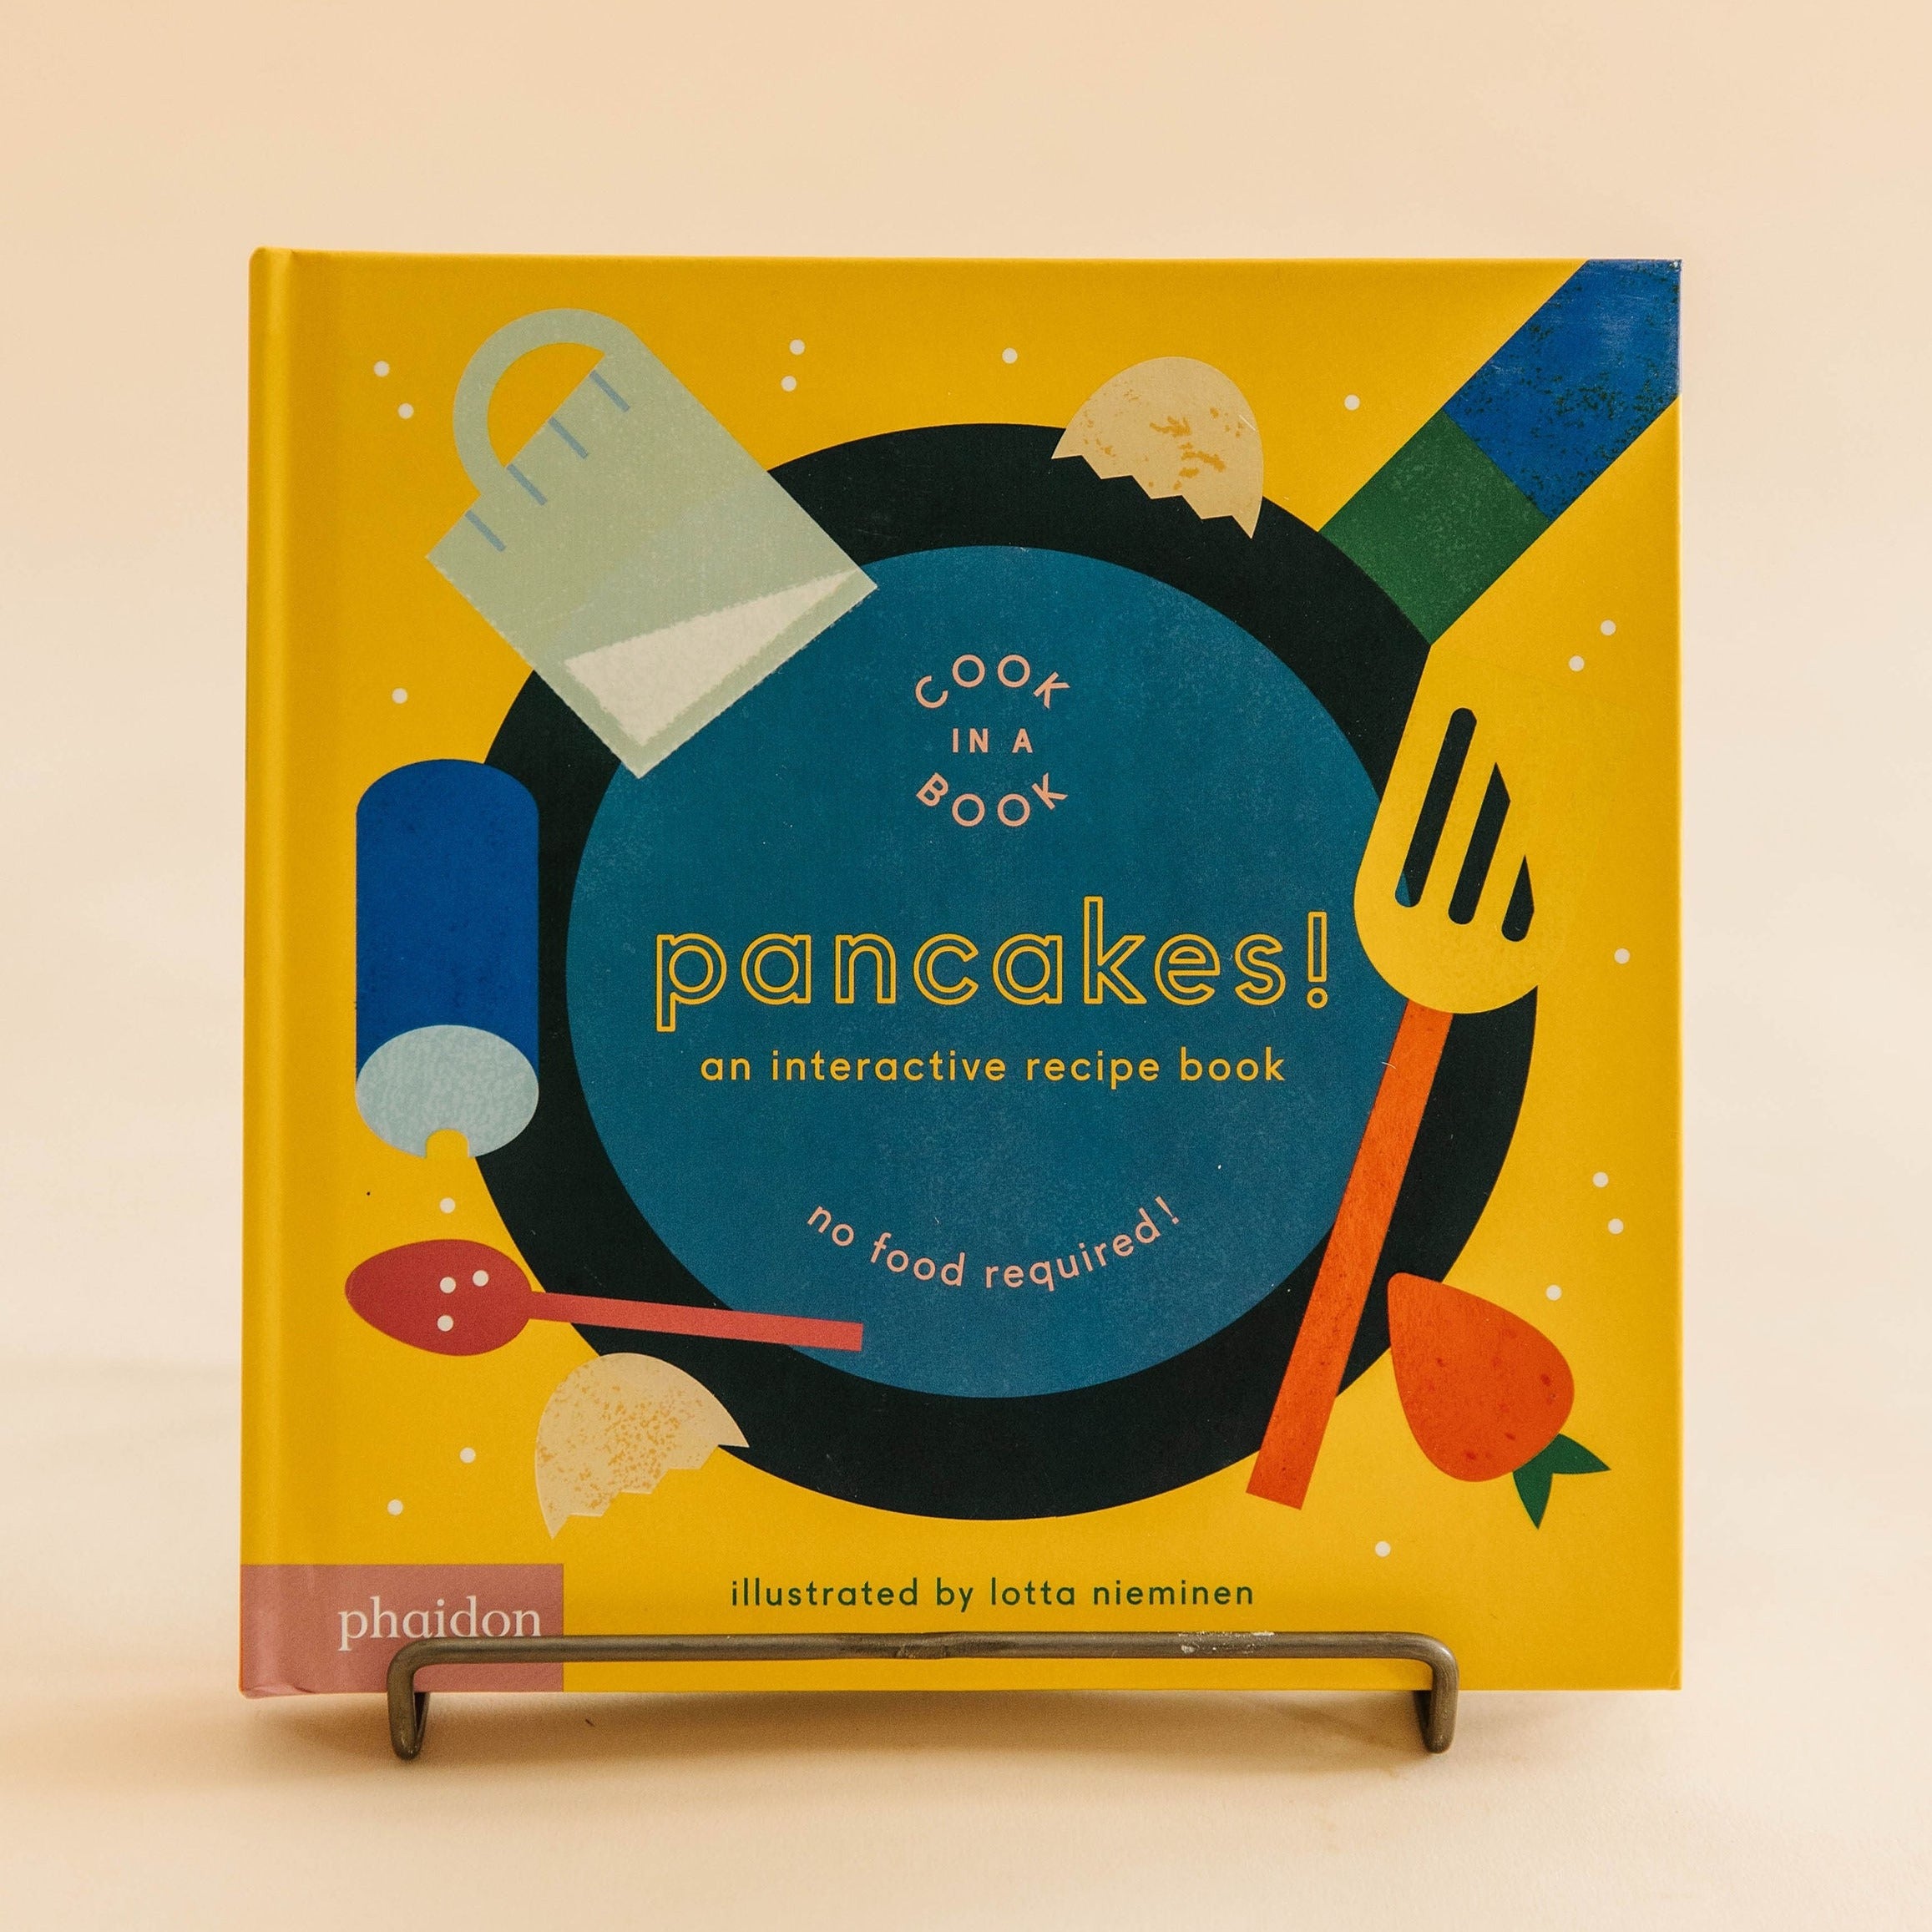 Pancakes! an interactive recipe book